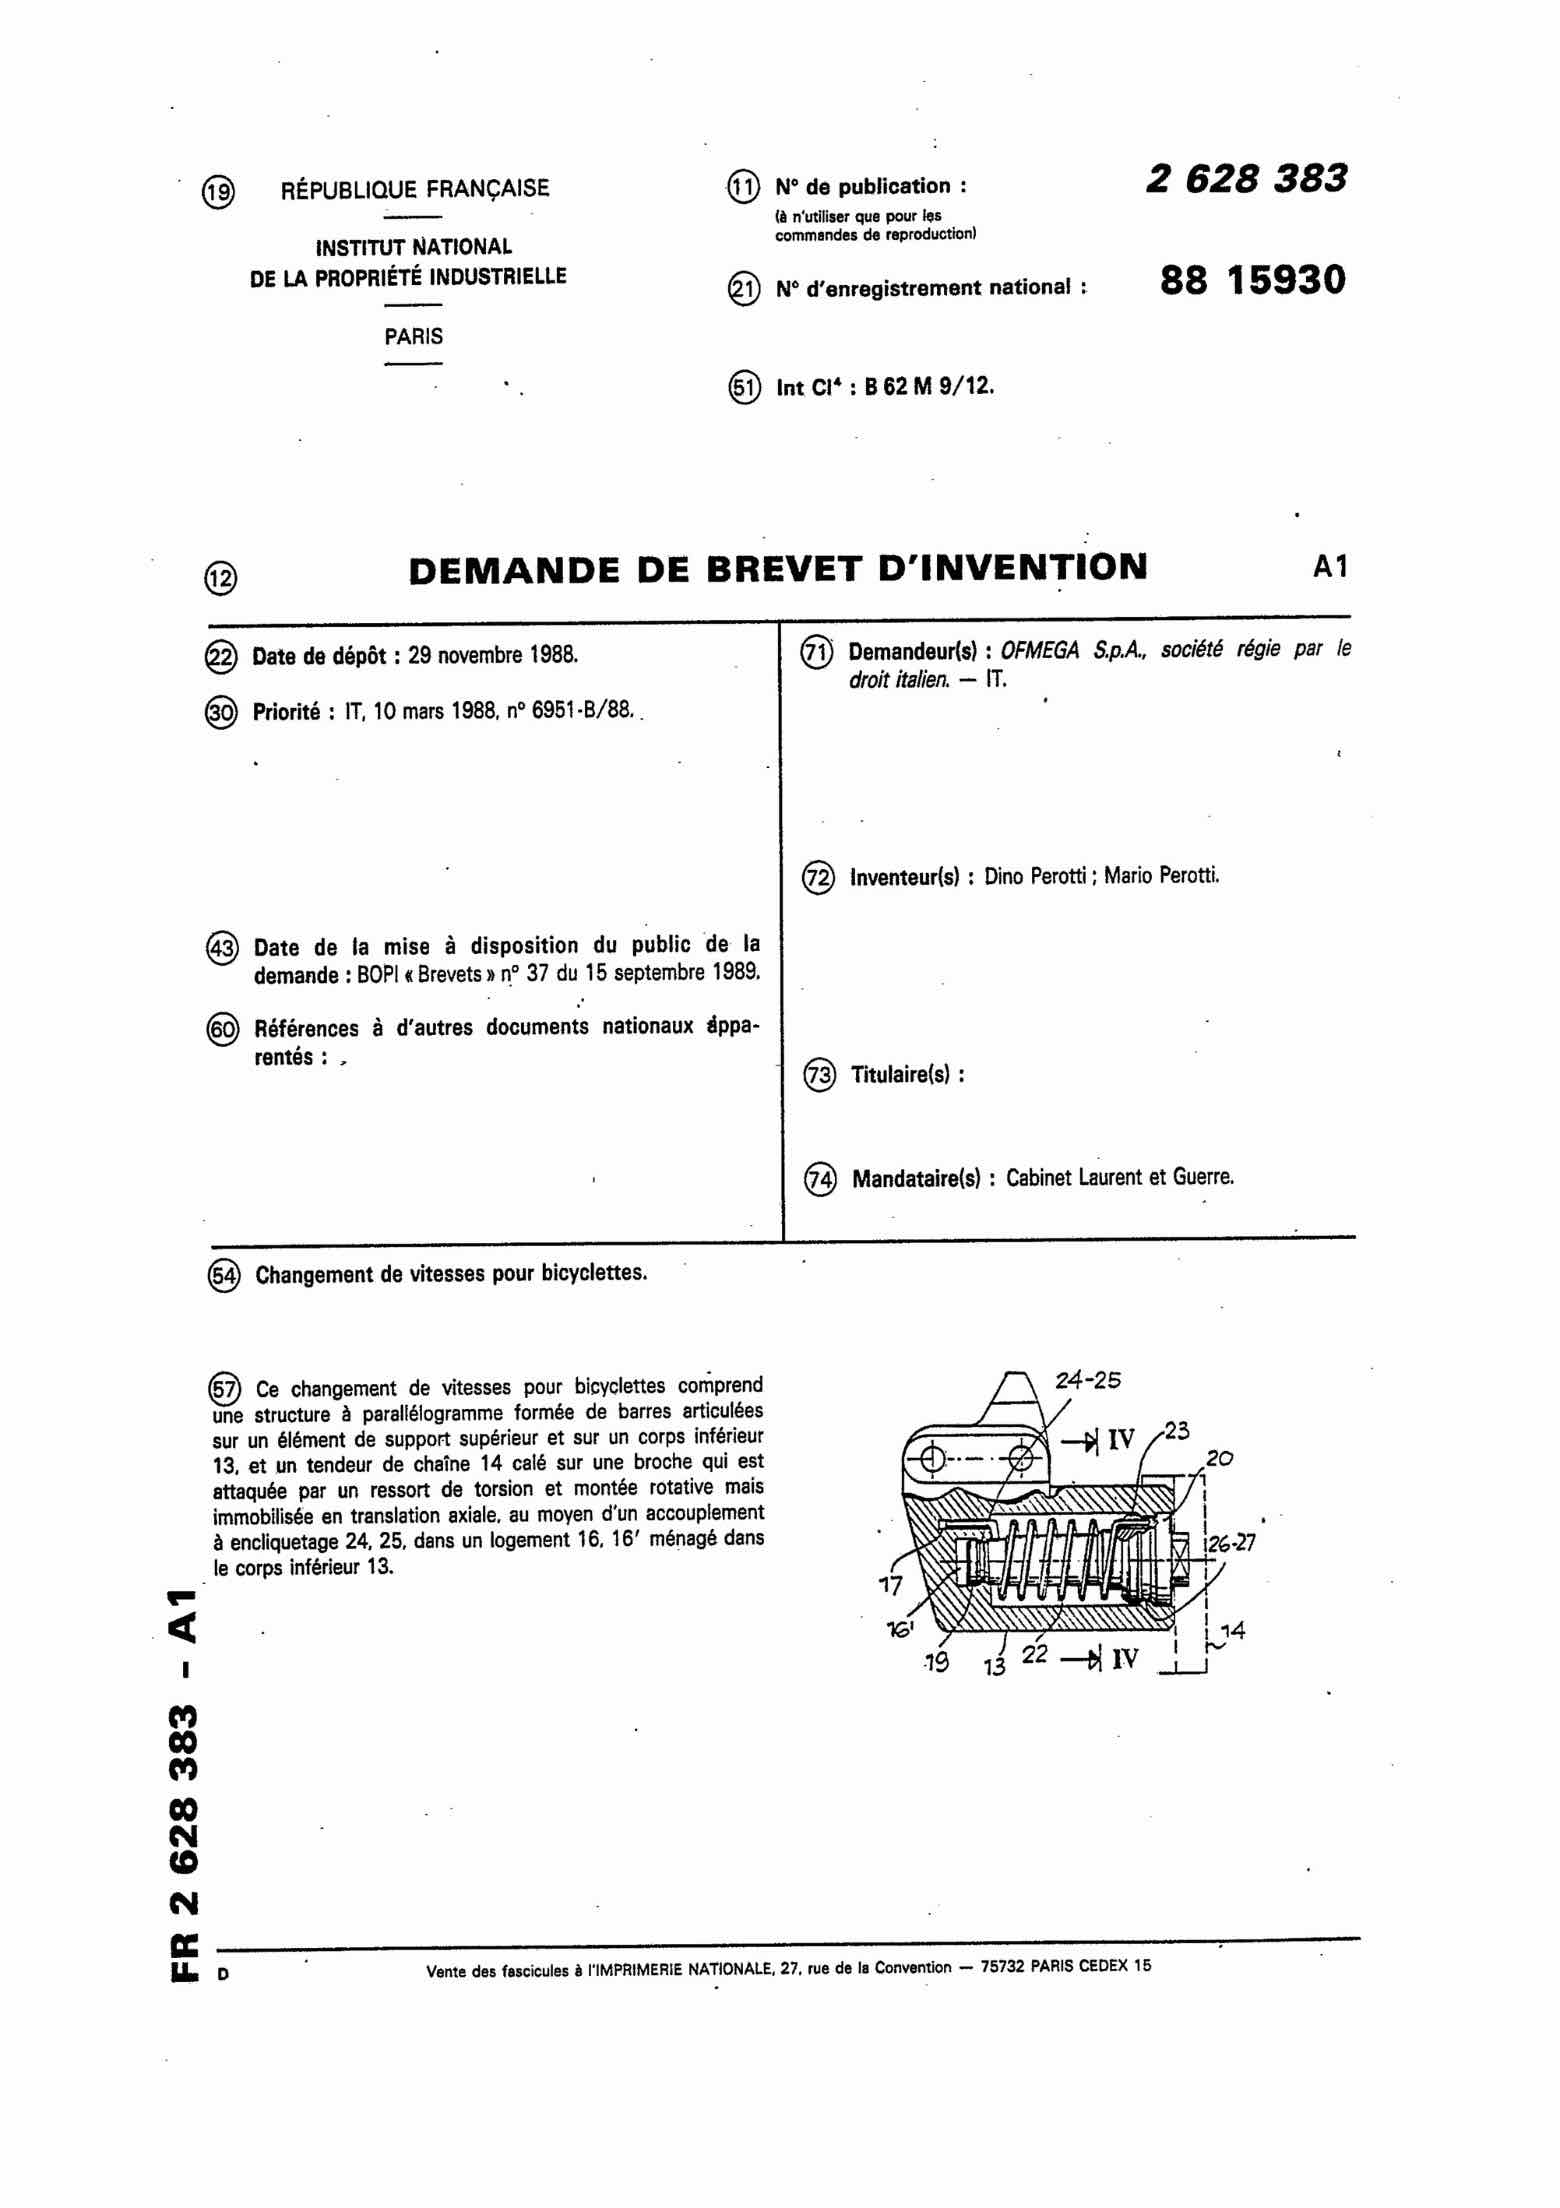 French Patent 2,628,383 - Ofmega Mundial scan 1 main image